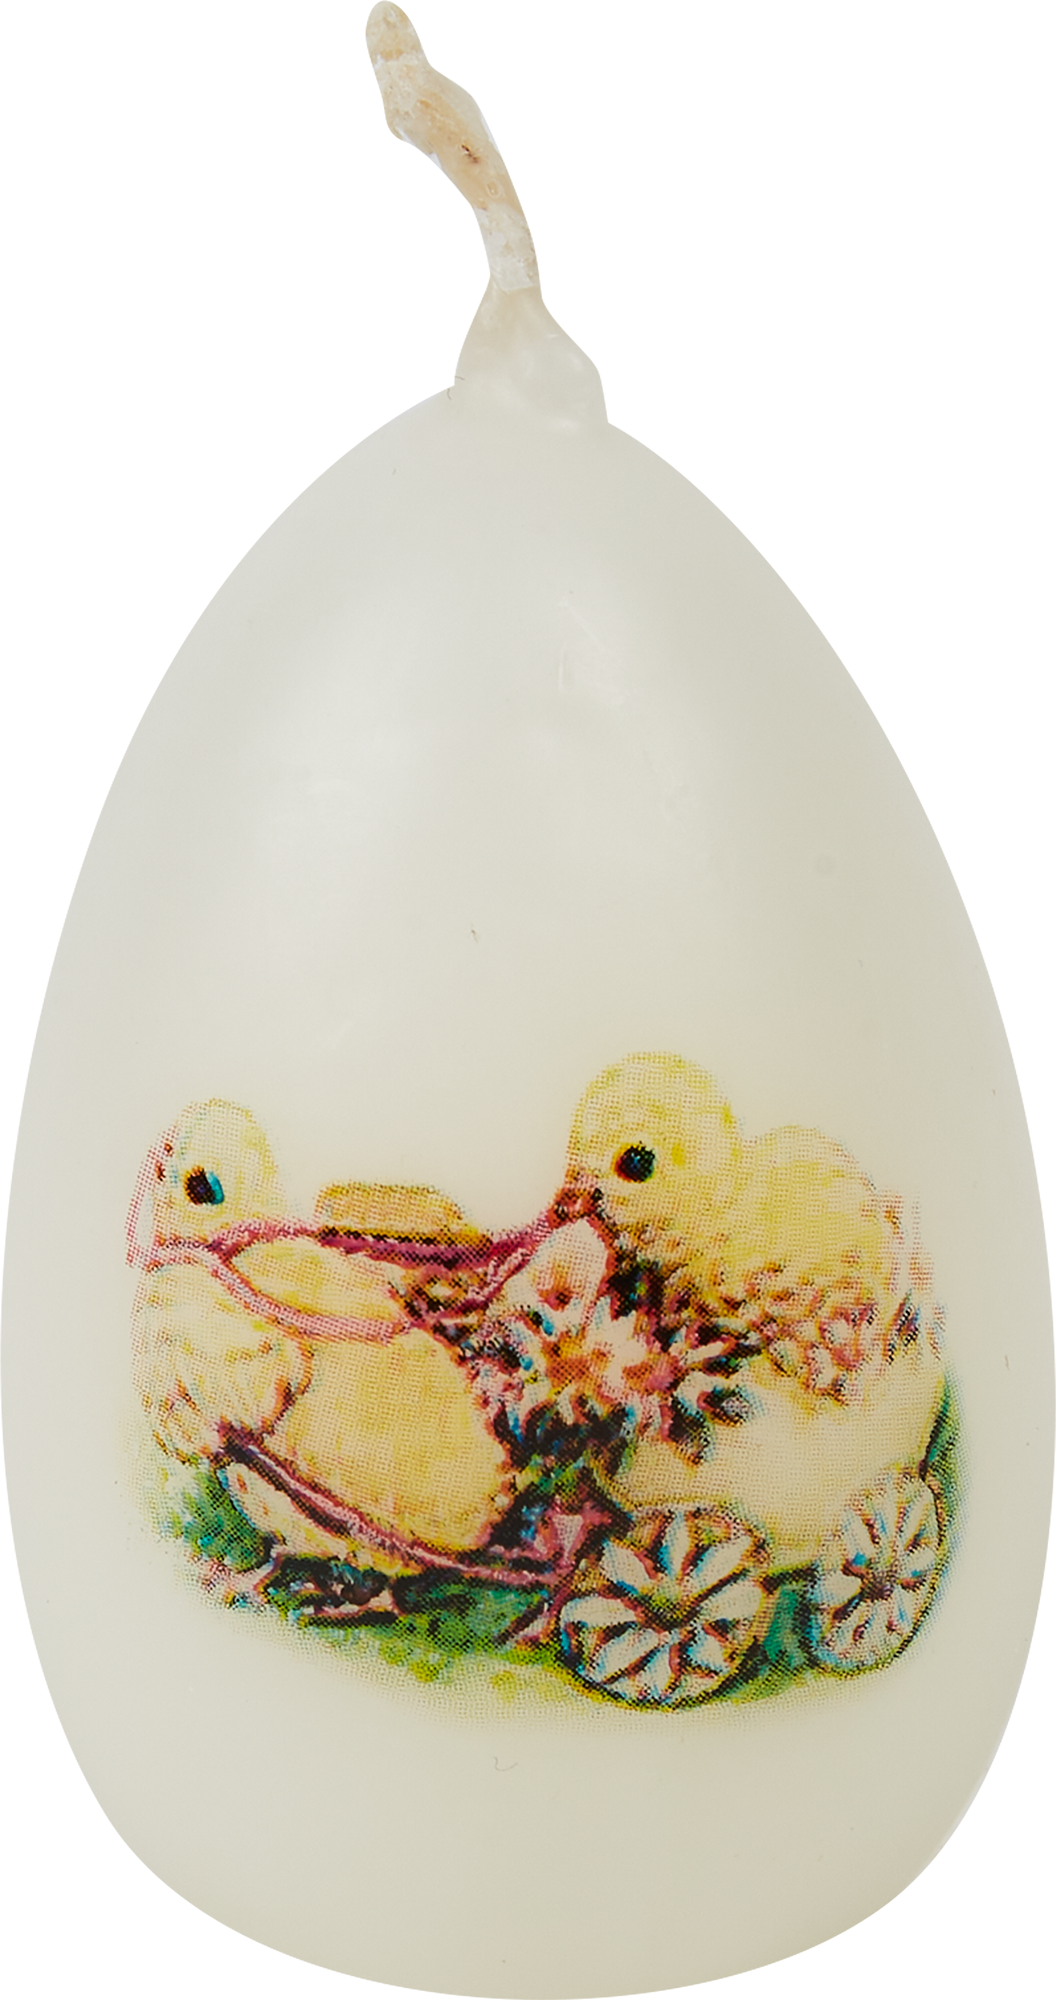  парафиновая Яйцо-3 малое с декором 2 белое 5,5 см по цене 5 ₽/шт .